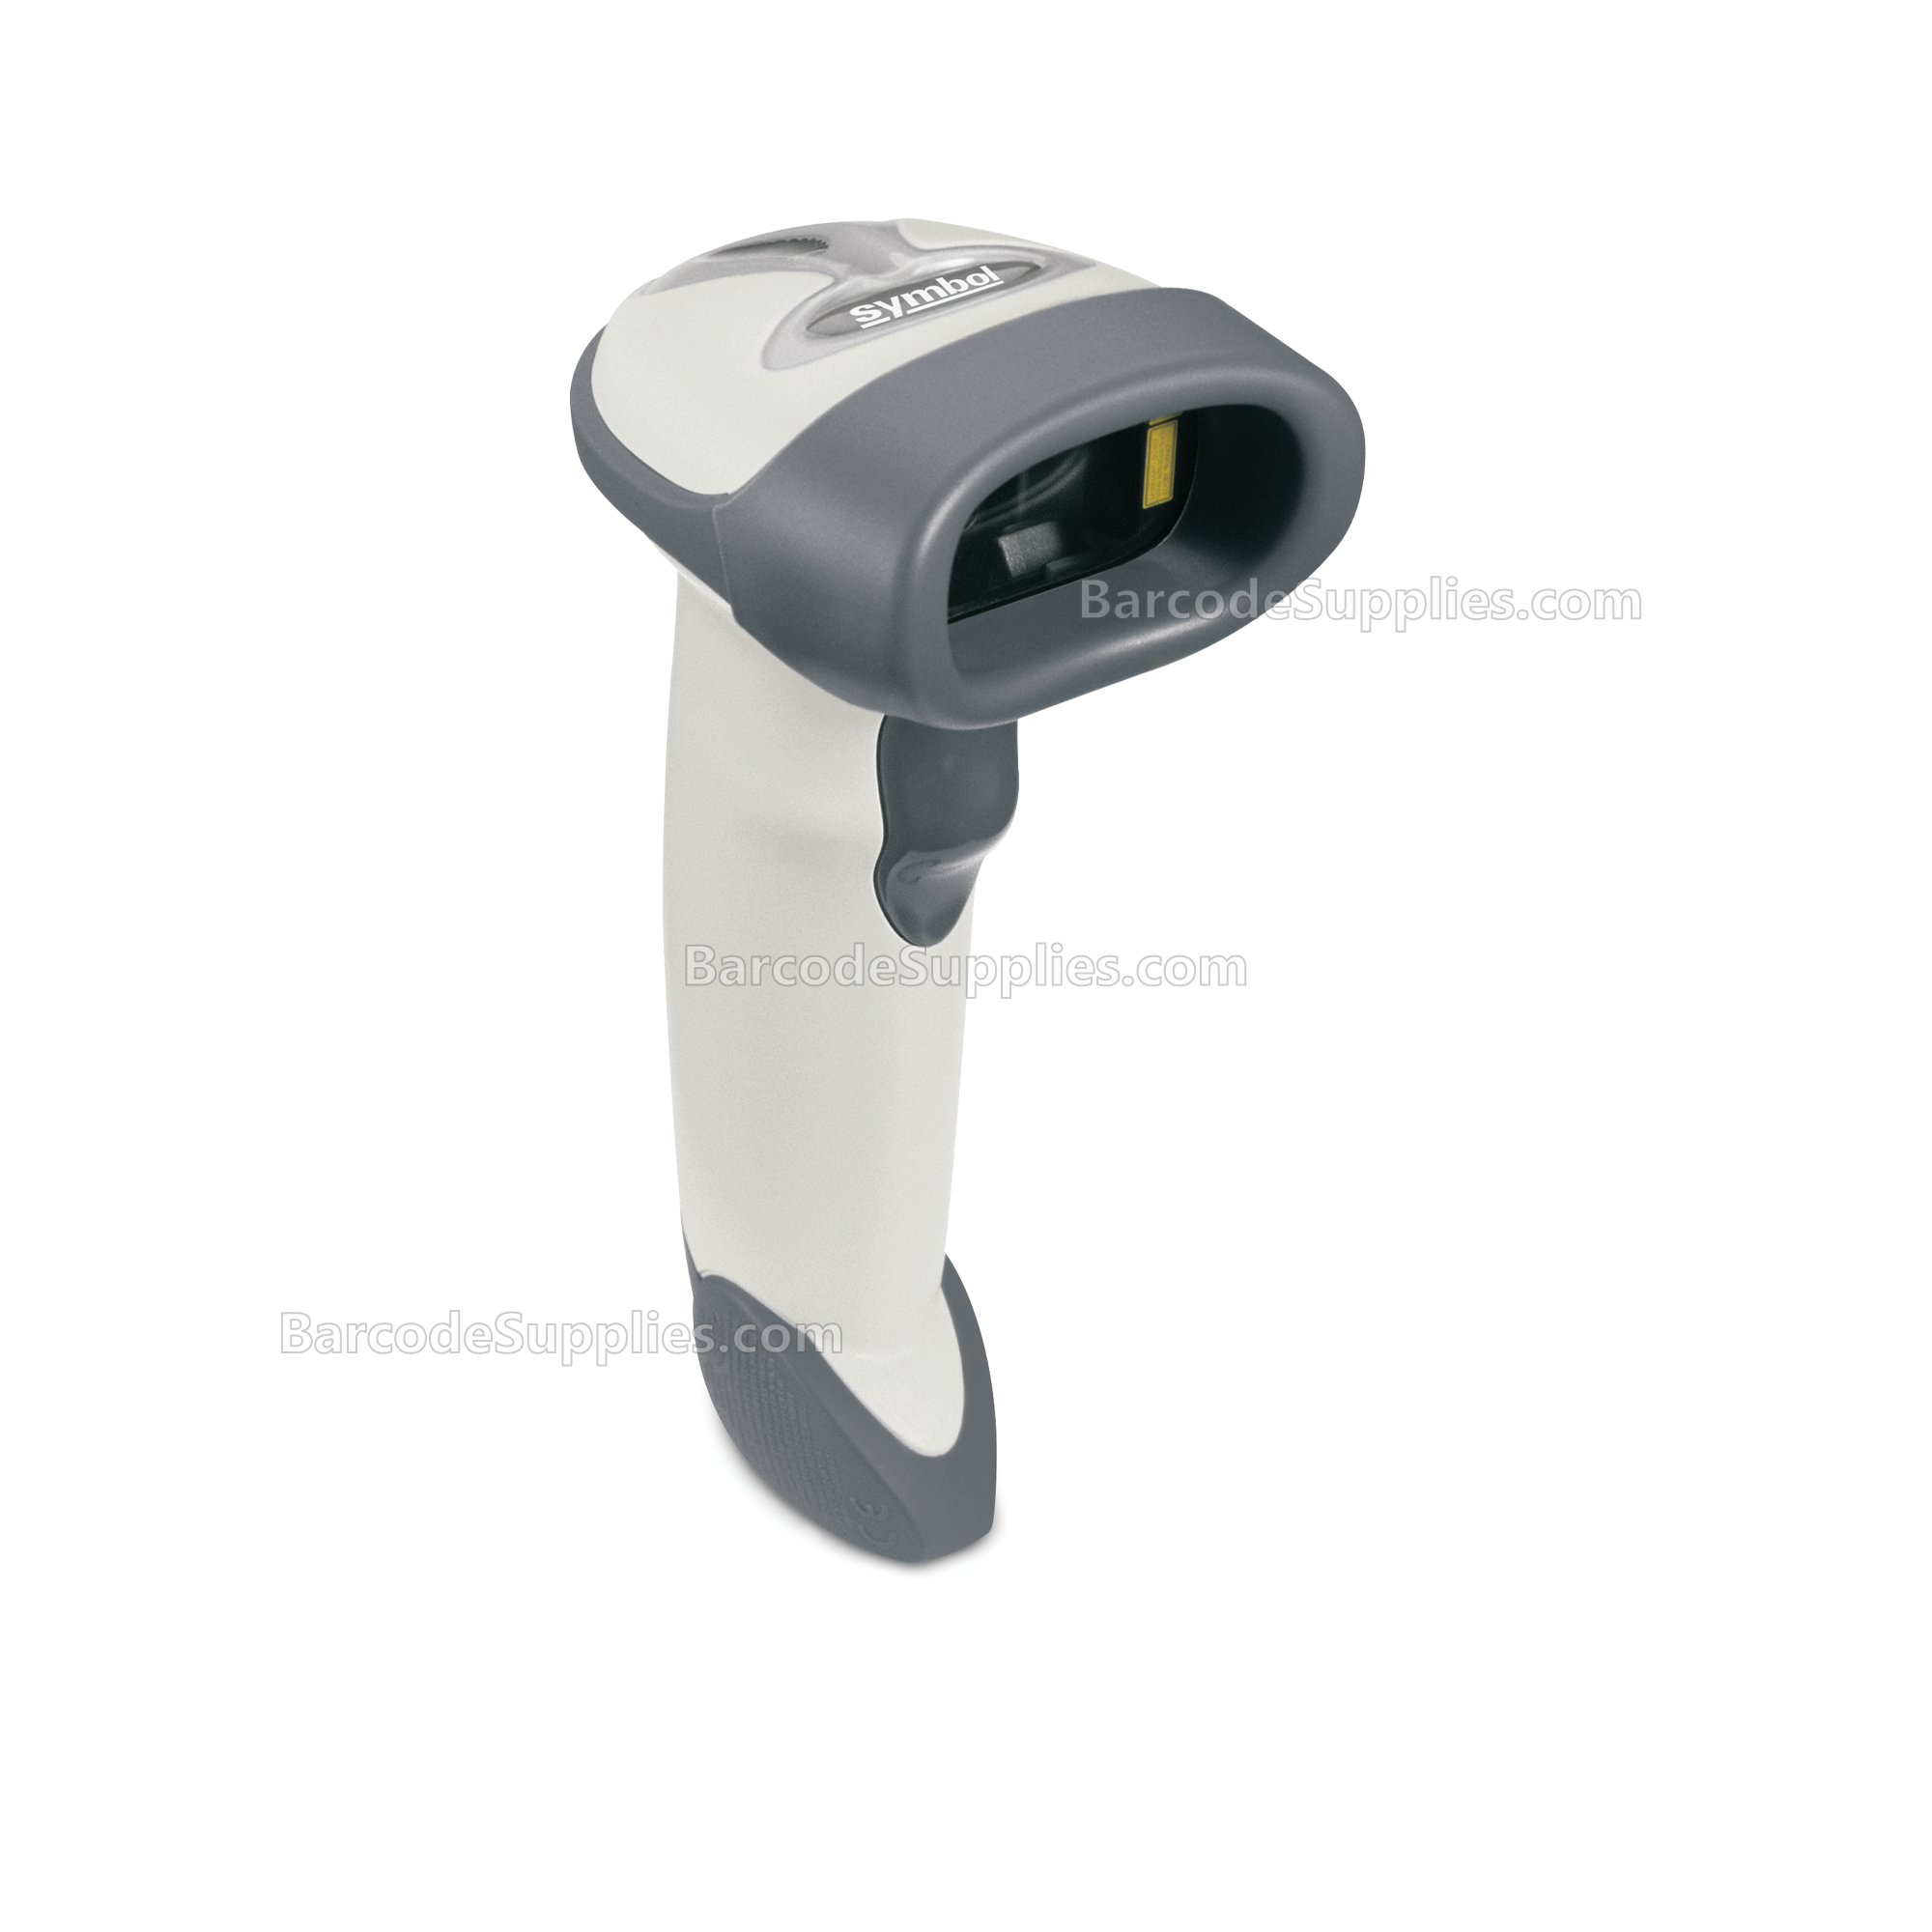 LS2208-SR White USB KIT - NA ONLY: LS2208-SR20001NA Scanner, CBA-U01-S07ZAR USB Cable